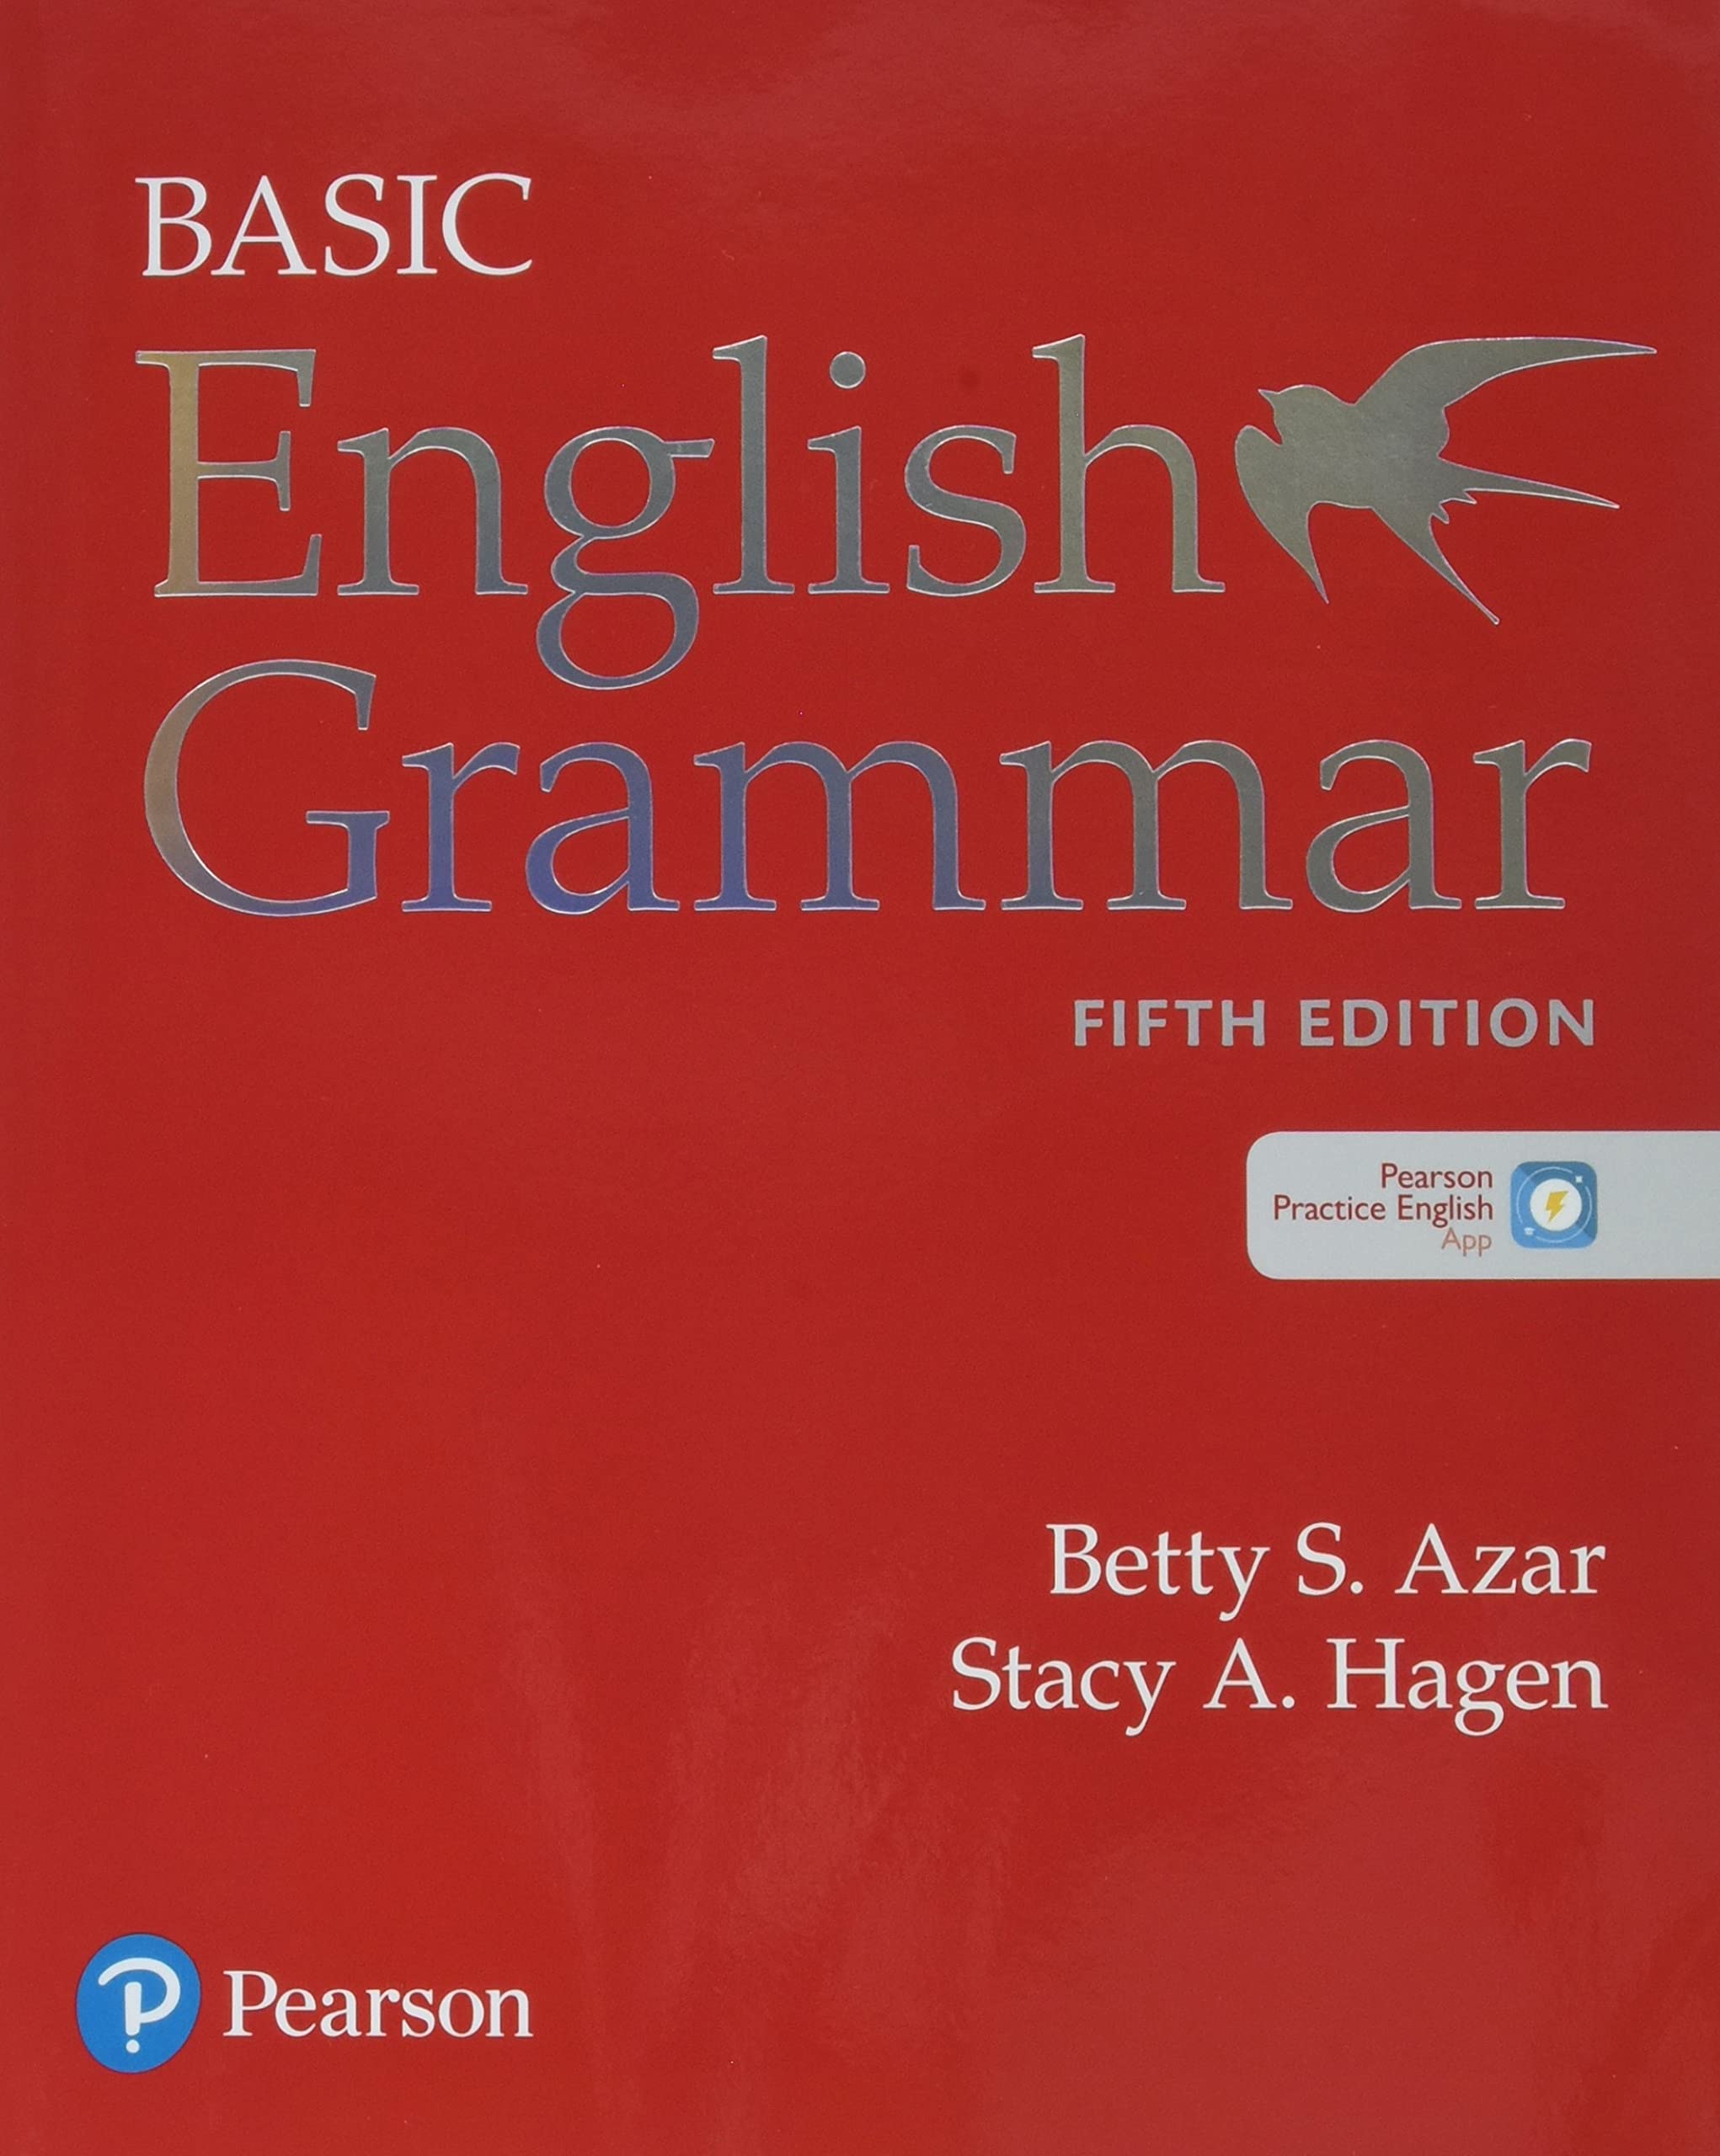 Basic English Grammar: 5th Edition